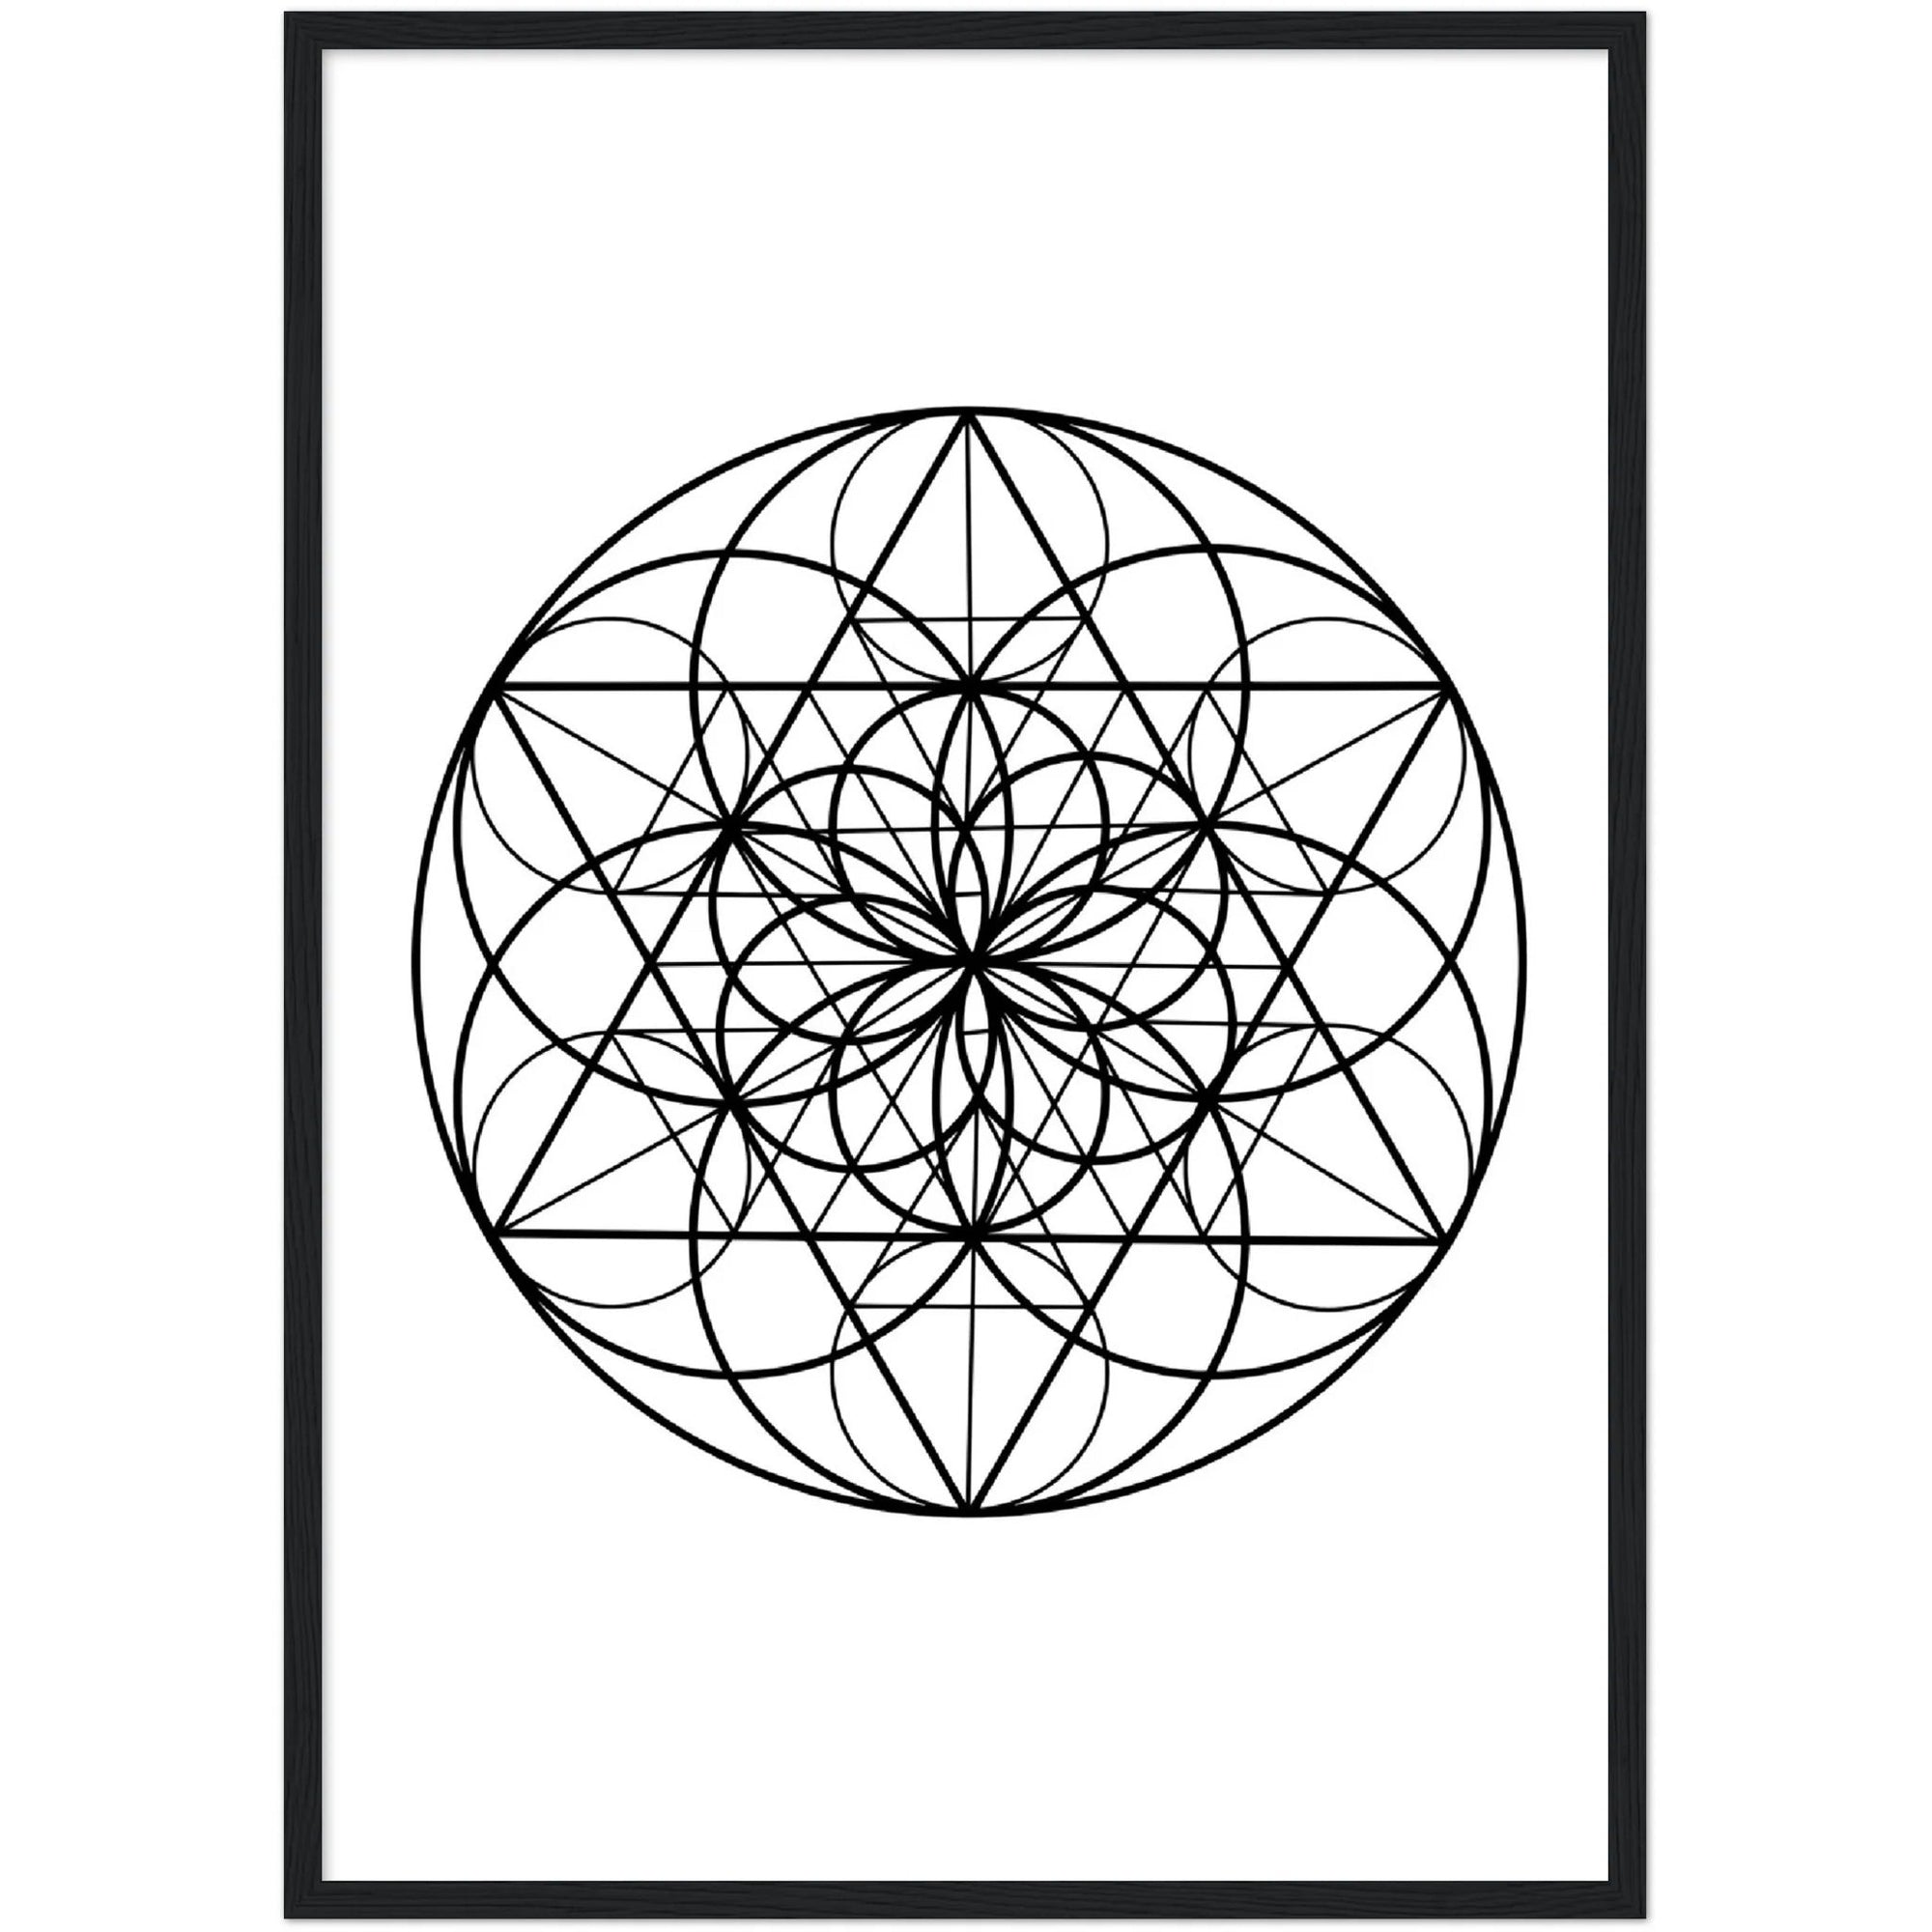 Geometric Mandala Wall Art - The Trendy Art